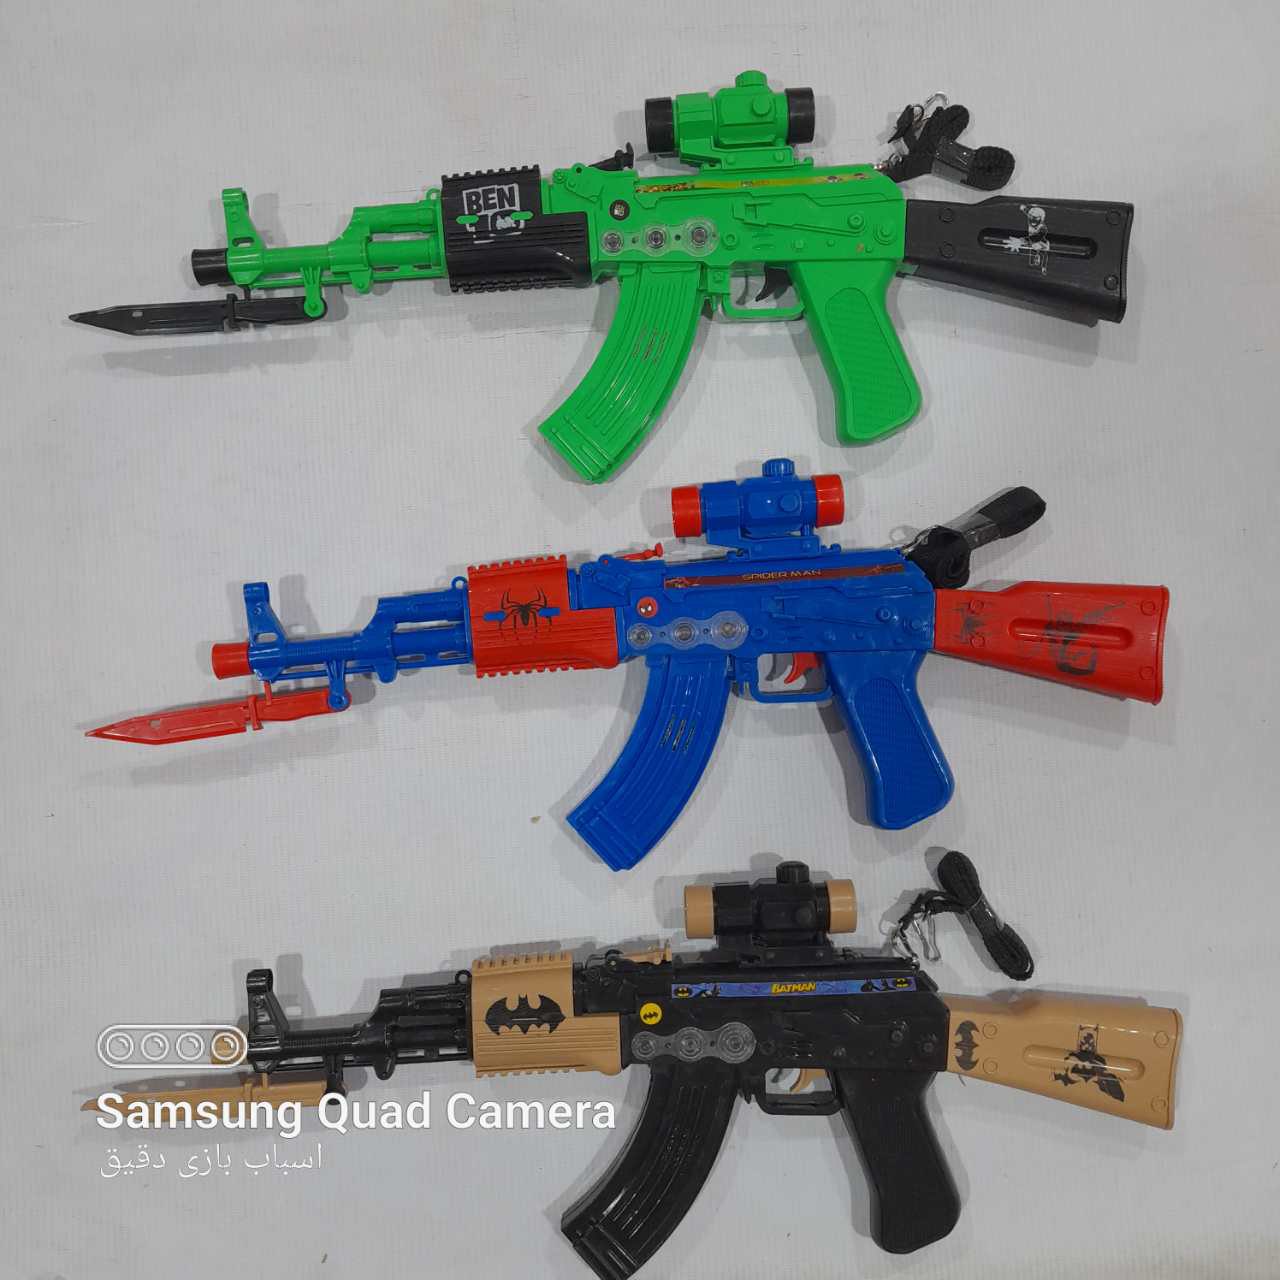   خرید اسباب بازی تفنگ چراغدار موزیکال ایرانی به قیمت بسیار خوب 